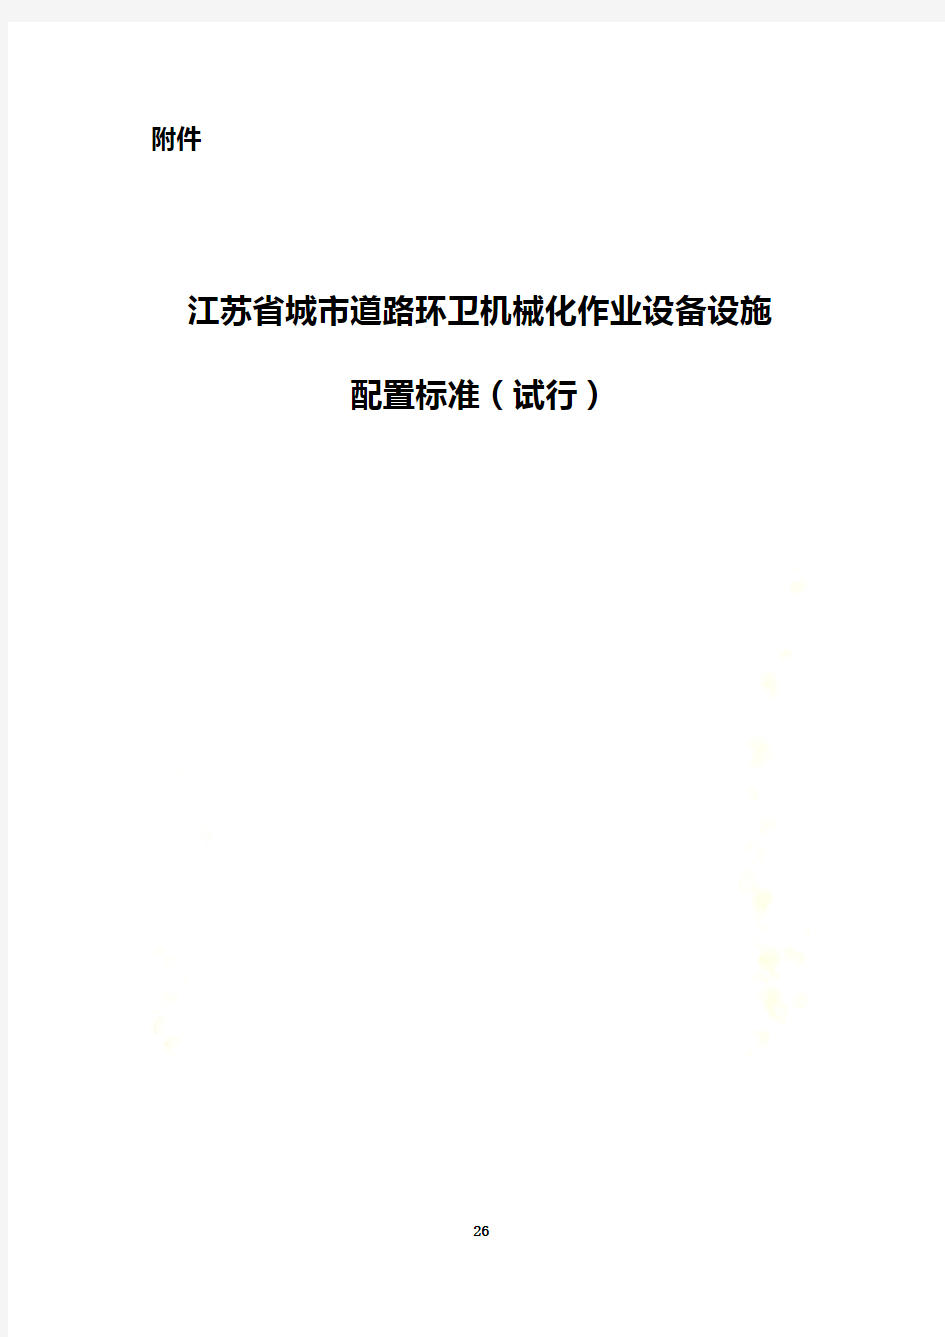 江苏省城市道路环卫机械化作业设备设施配置标准(试行)